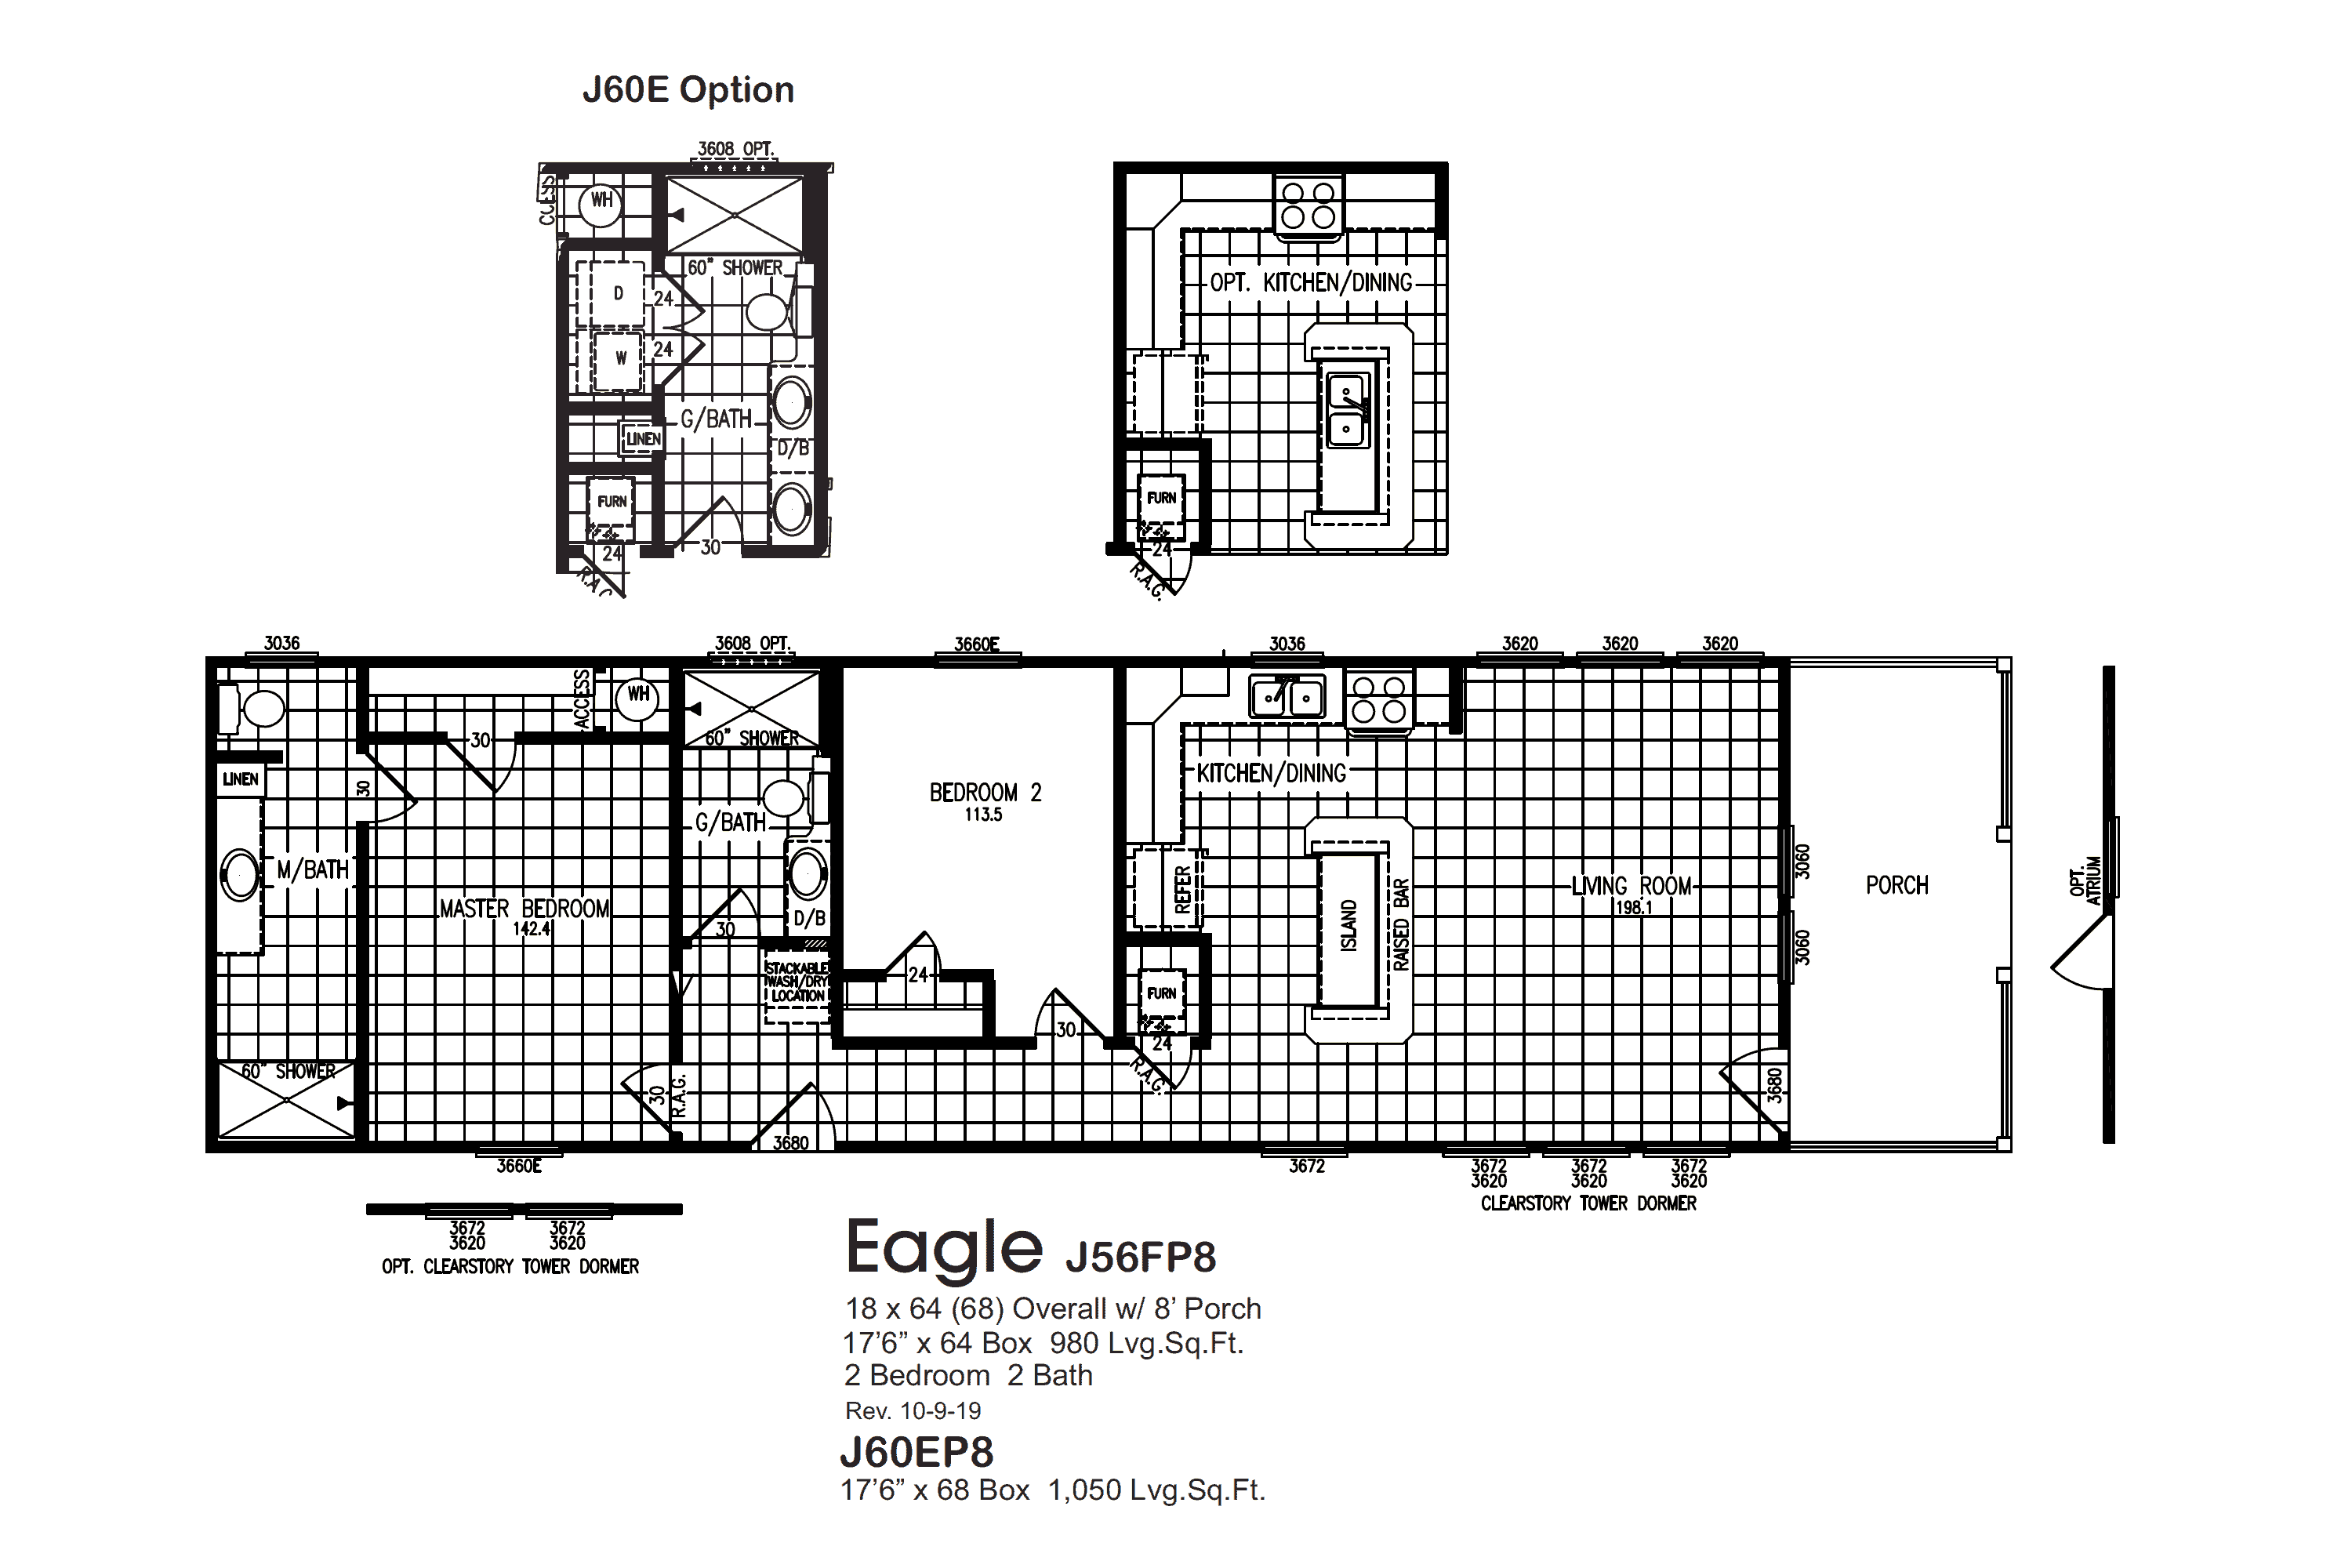 Eagle J56FP8 J60EP8 Floorplan